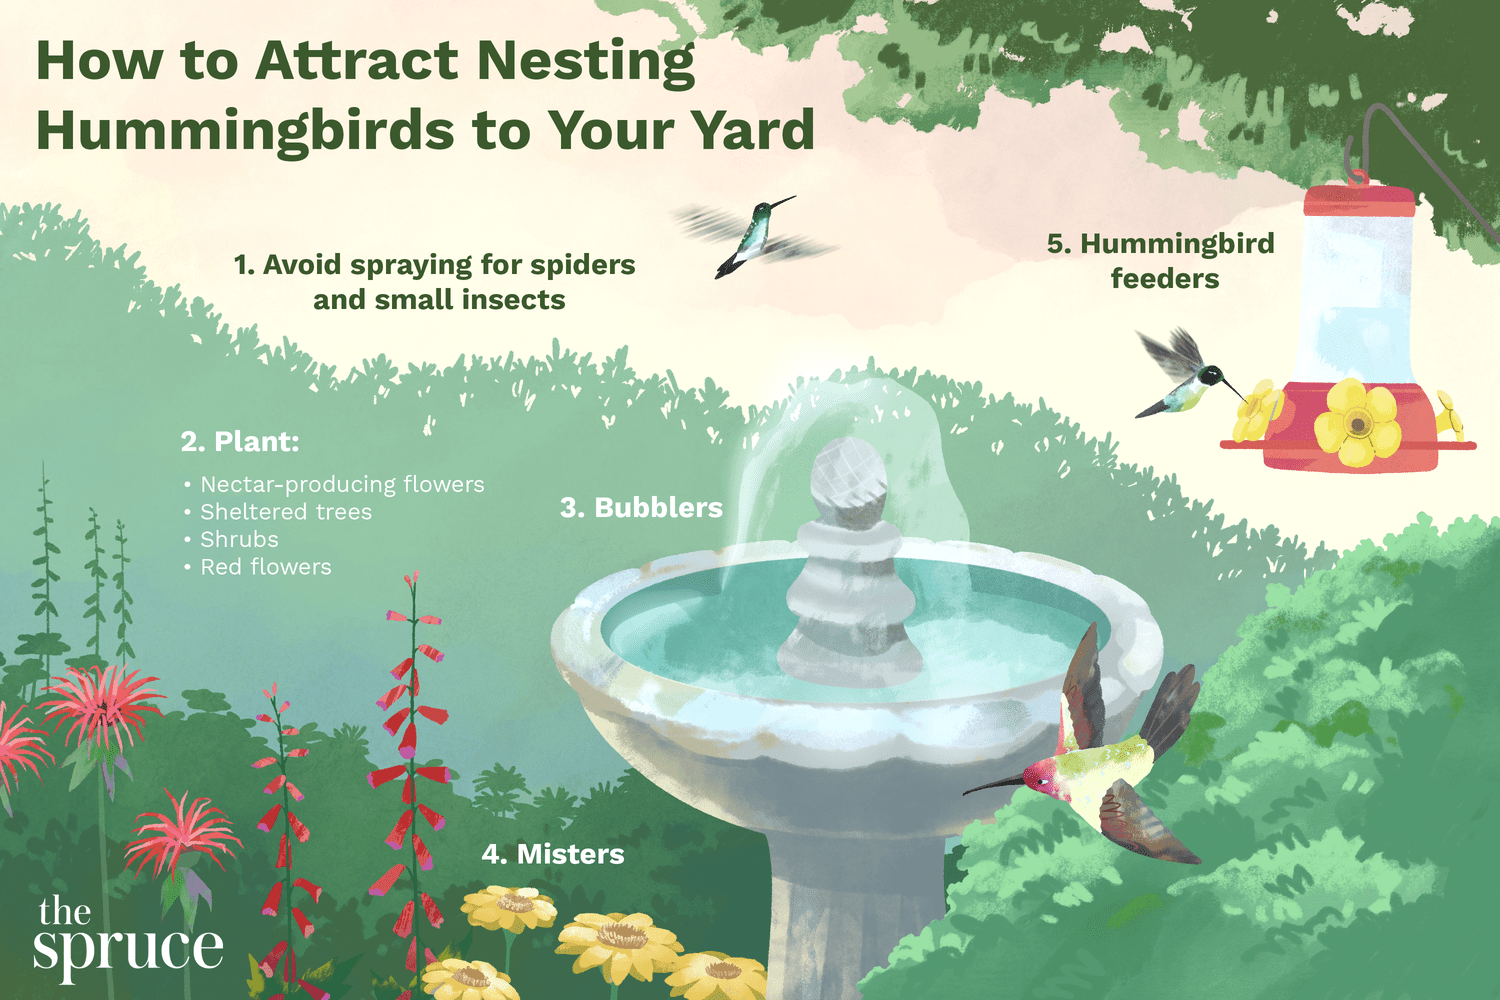 Tipps zum Anbringen von Kolibri-Nestern im Garten